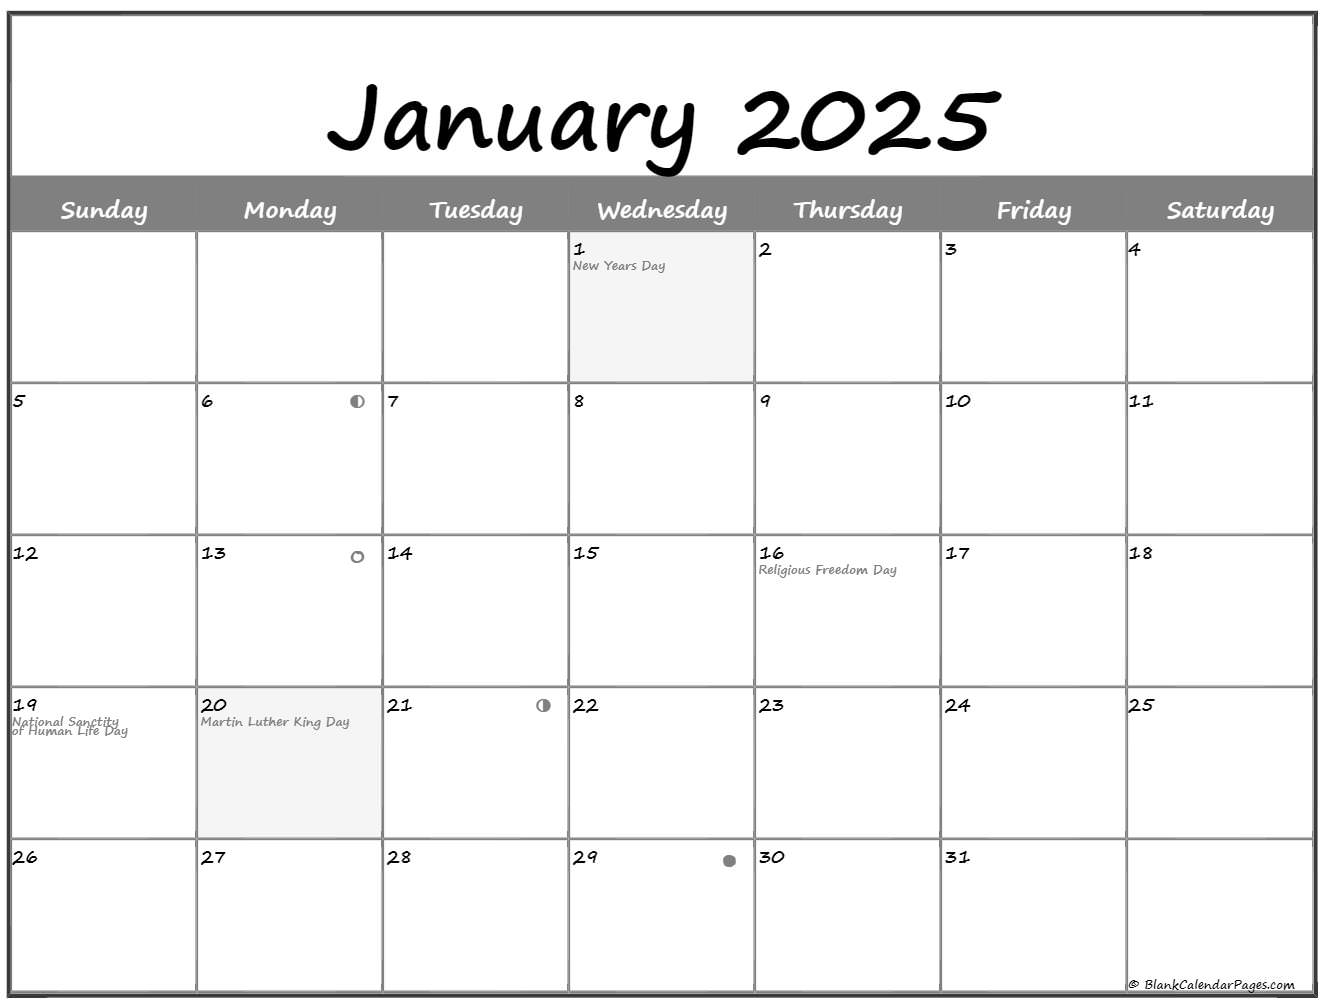 january-2025-lunar-calendar-moon-phase-calendar